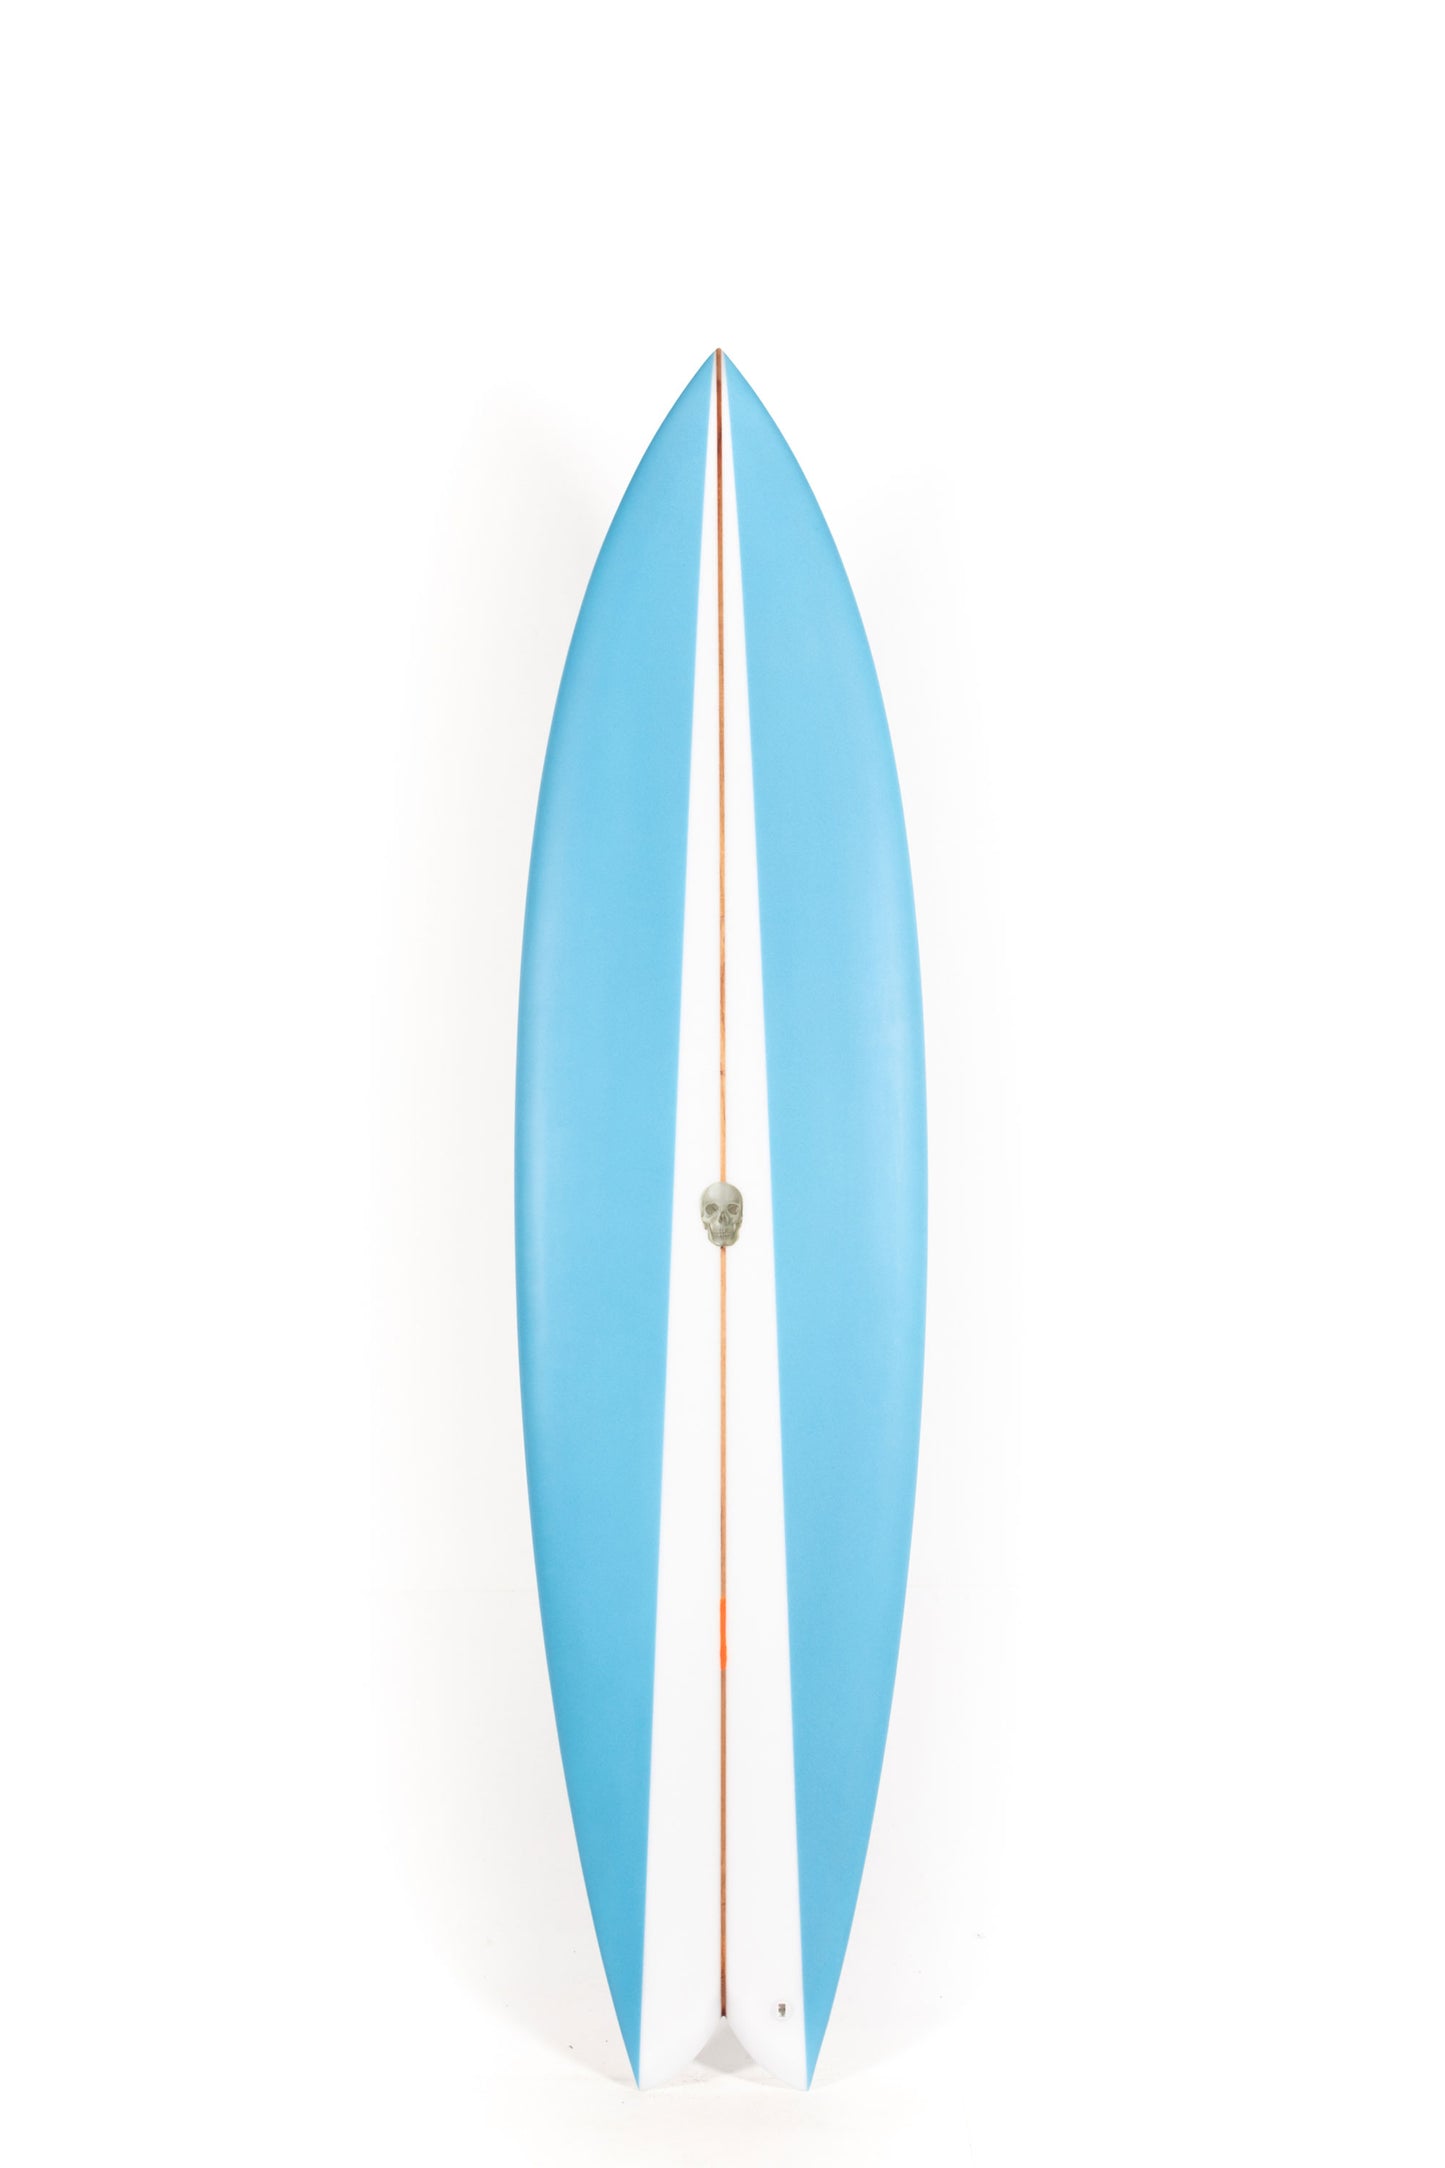 Pukas Surf Shop - Christenson Surfboards - NAUTILUS - 7'6" x 21 5/8 x 2 3/4 - CX05016